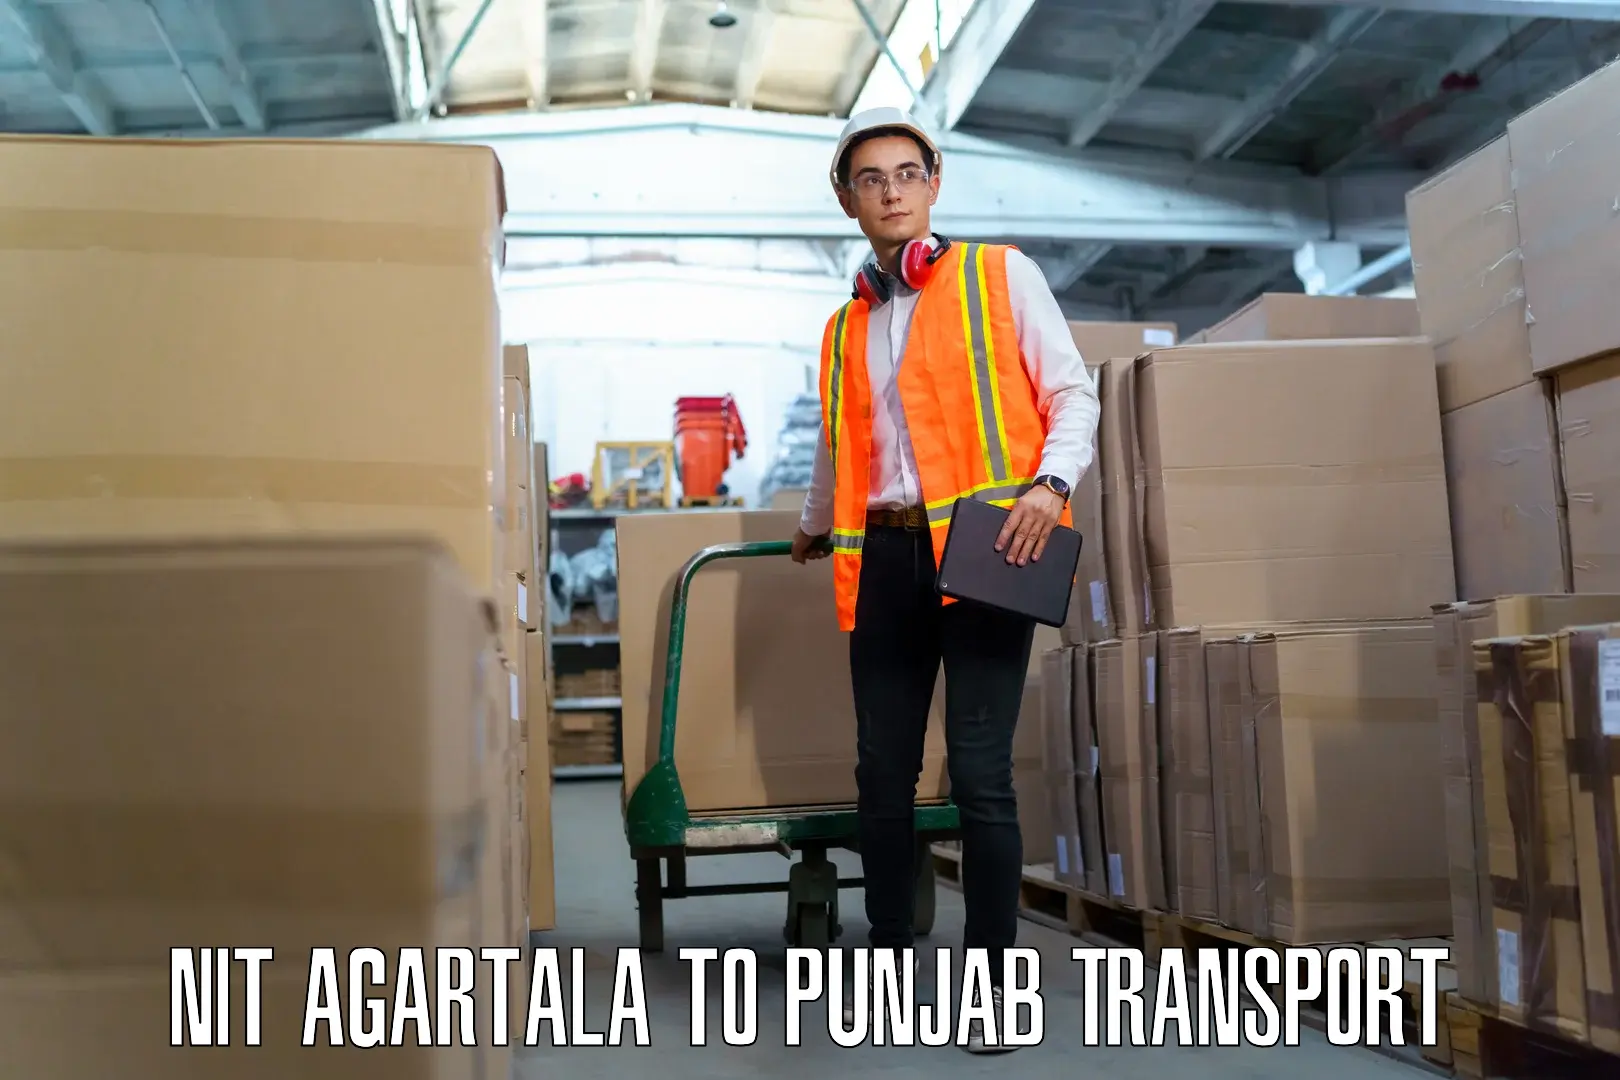 Commercial transport service NIT Agartala to Rupnagar